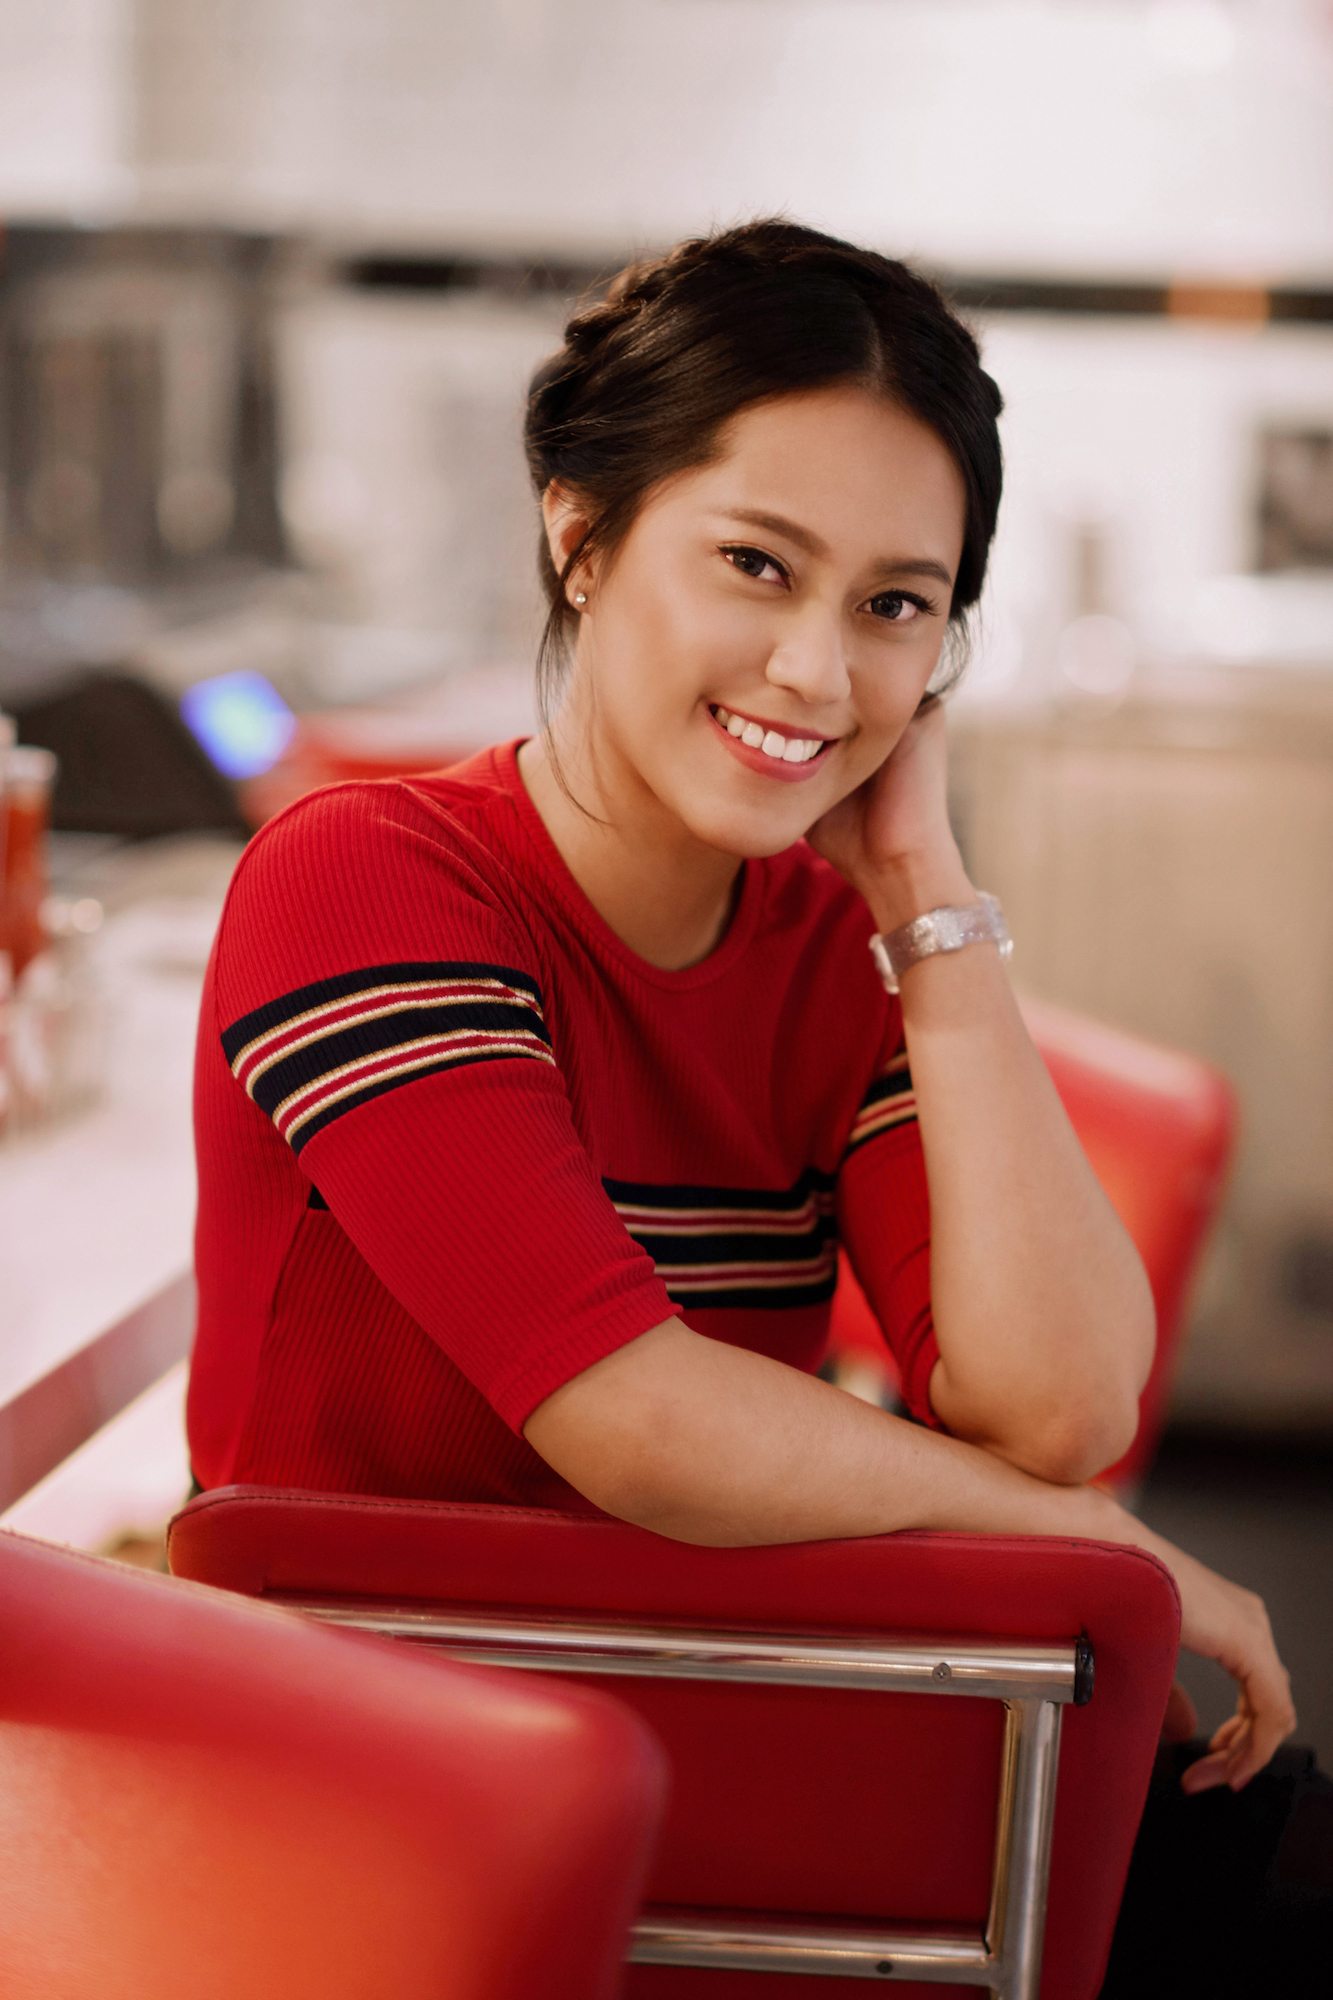 Wanita asia dengan model rambut crown braid dengan warna baju merah – cara menata rambut pendek ke pesta